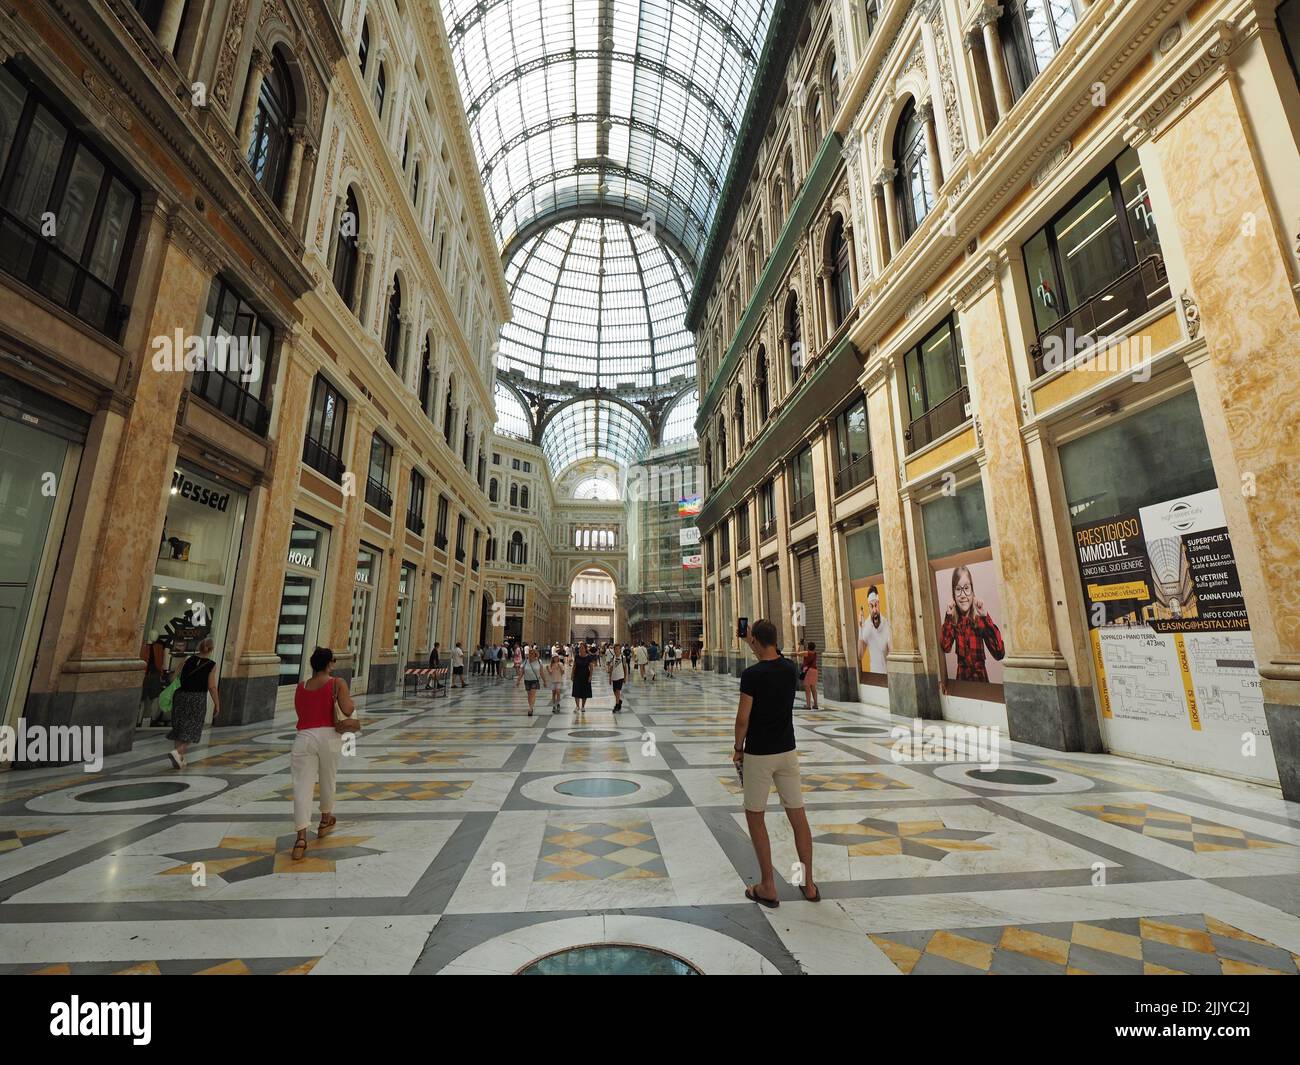 All'interno del centro commerciale Galleria Umberto 1 nel centro di Napoli, con negozi di persone e fotografare gli uomini. Napoli, Campania, Italia Foto Stock